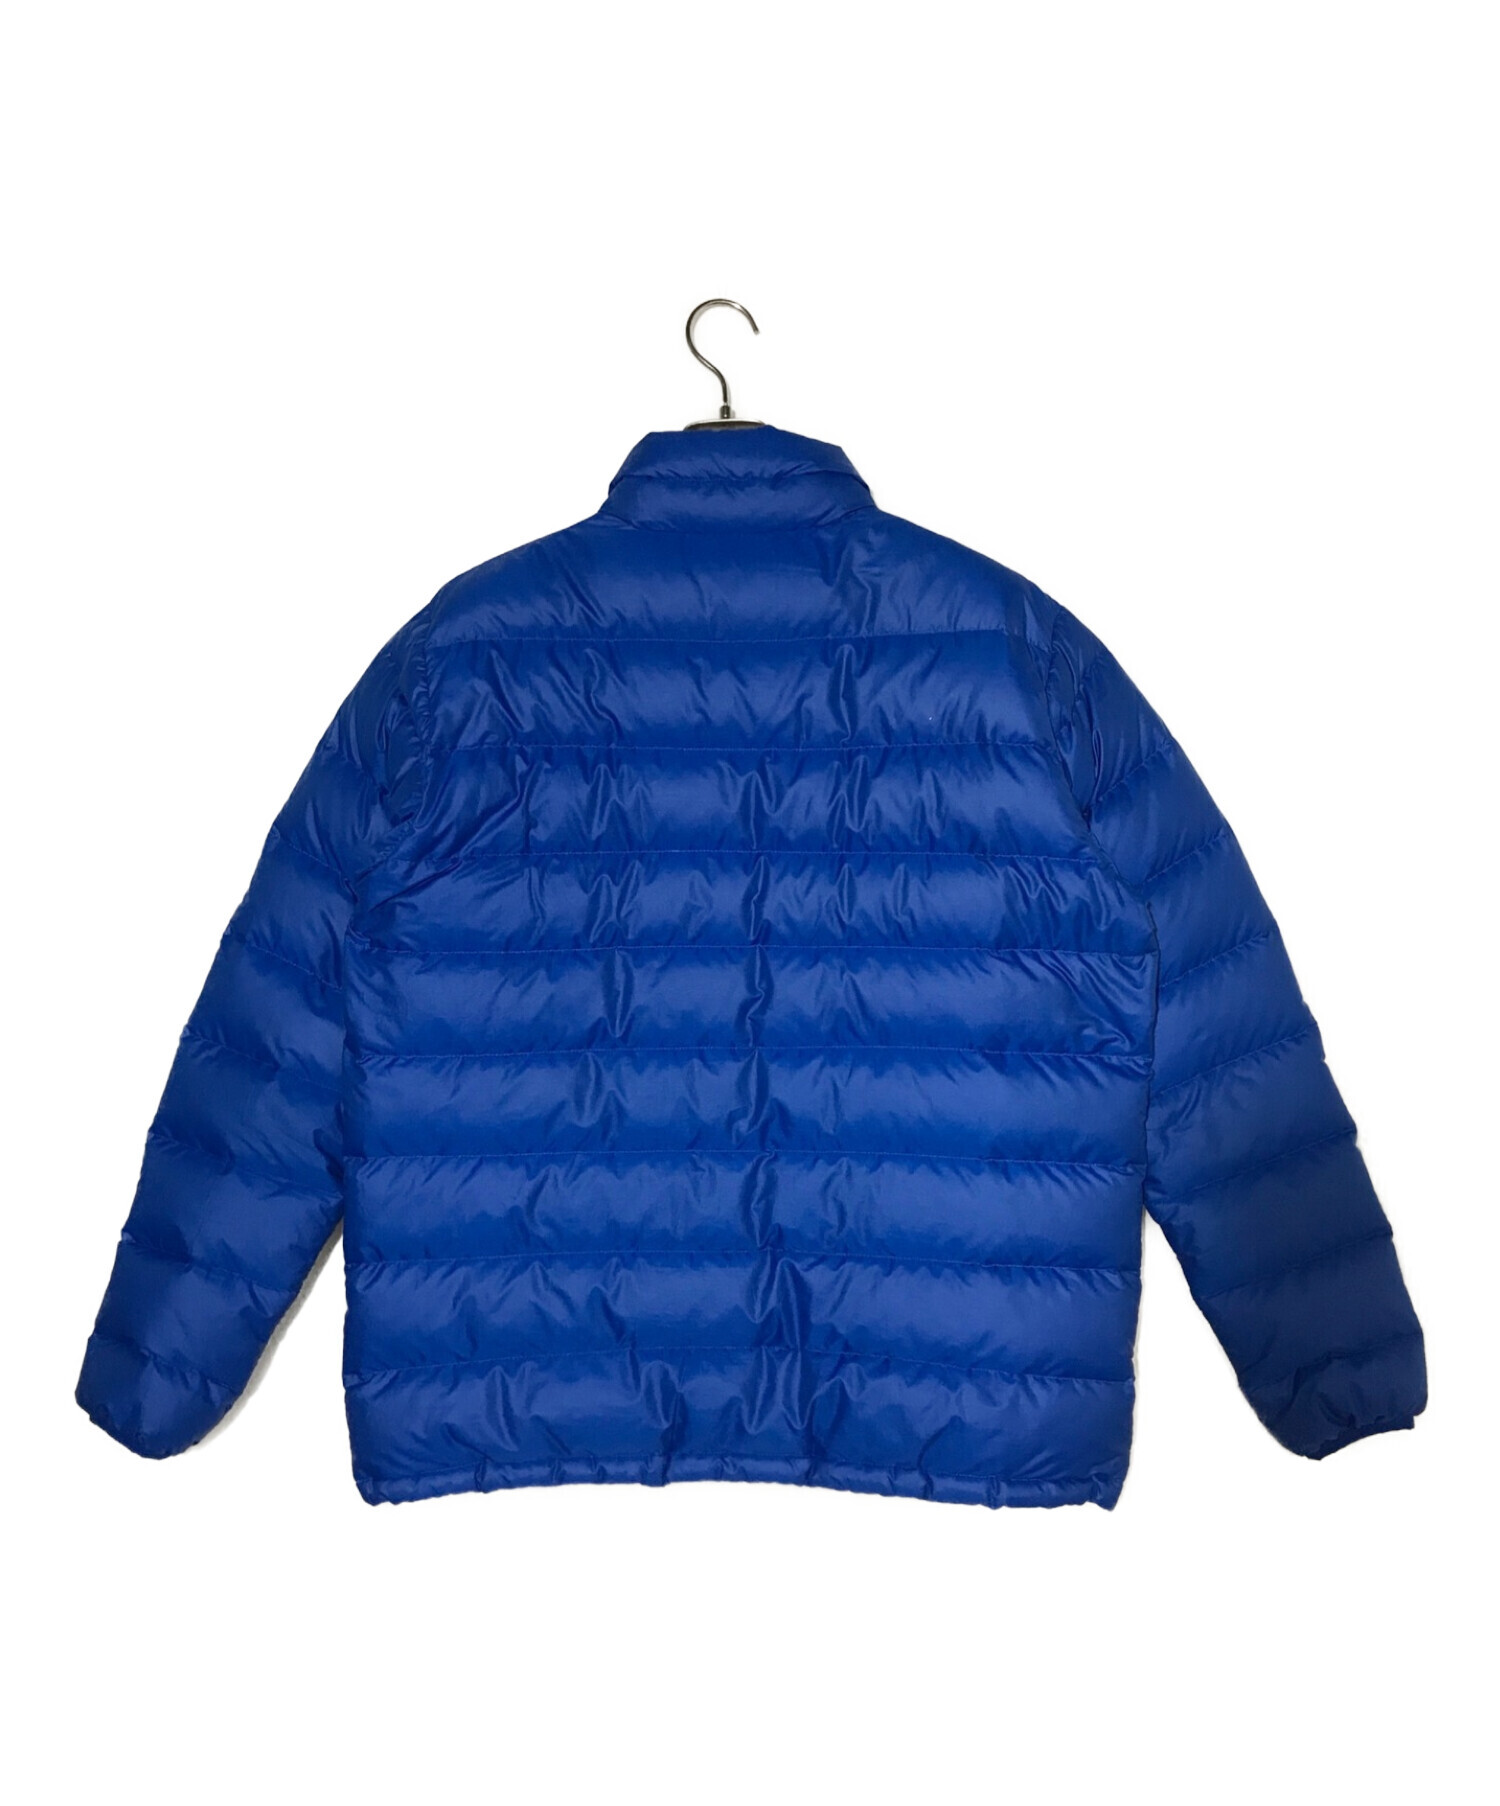 Patagonia (パタゴニア) ダウンジャケット ブルー サイズ:L